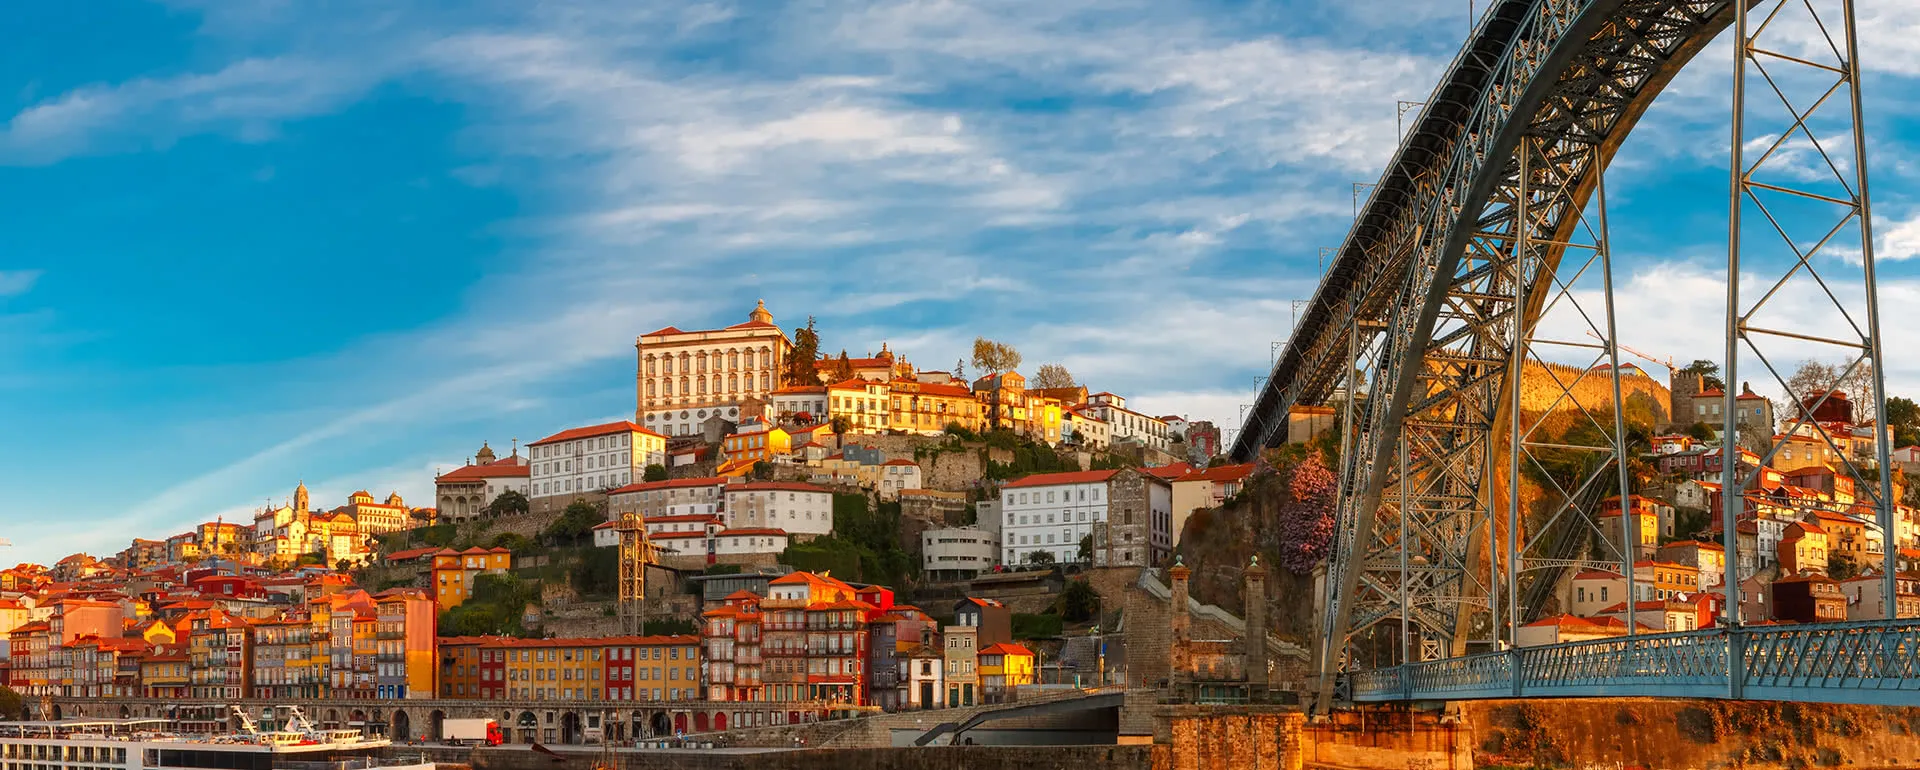 Porto - the destination for school trips